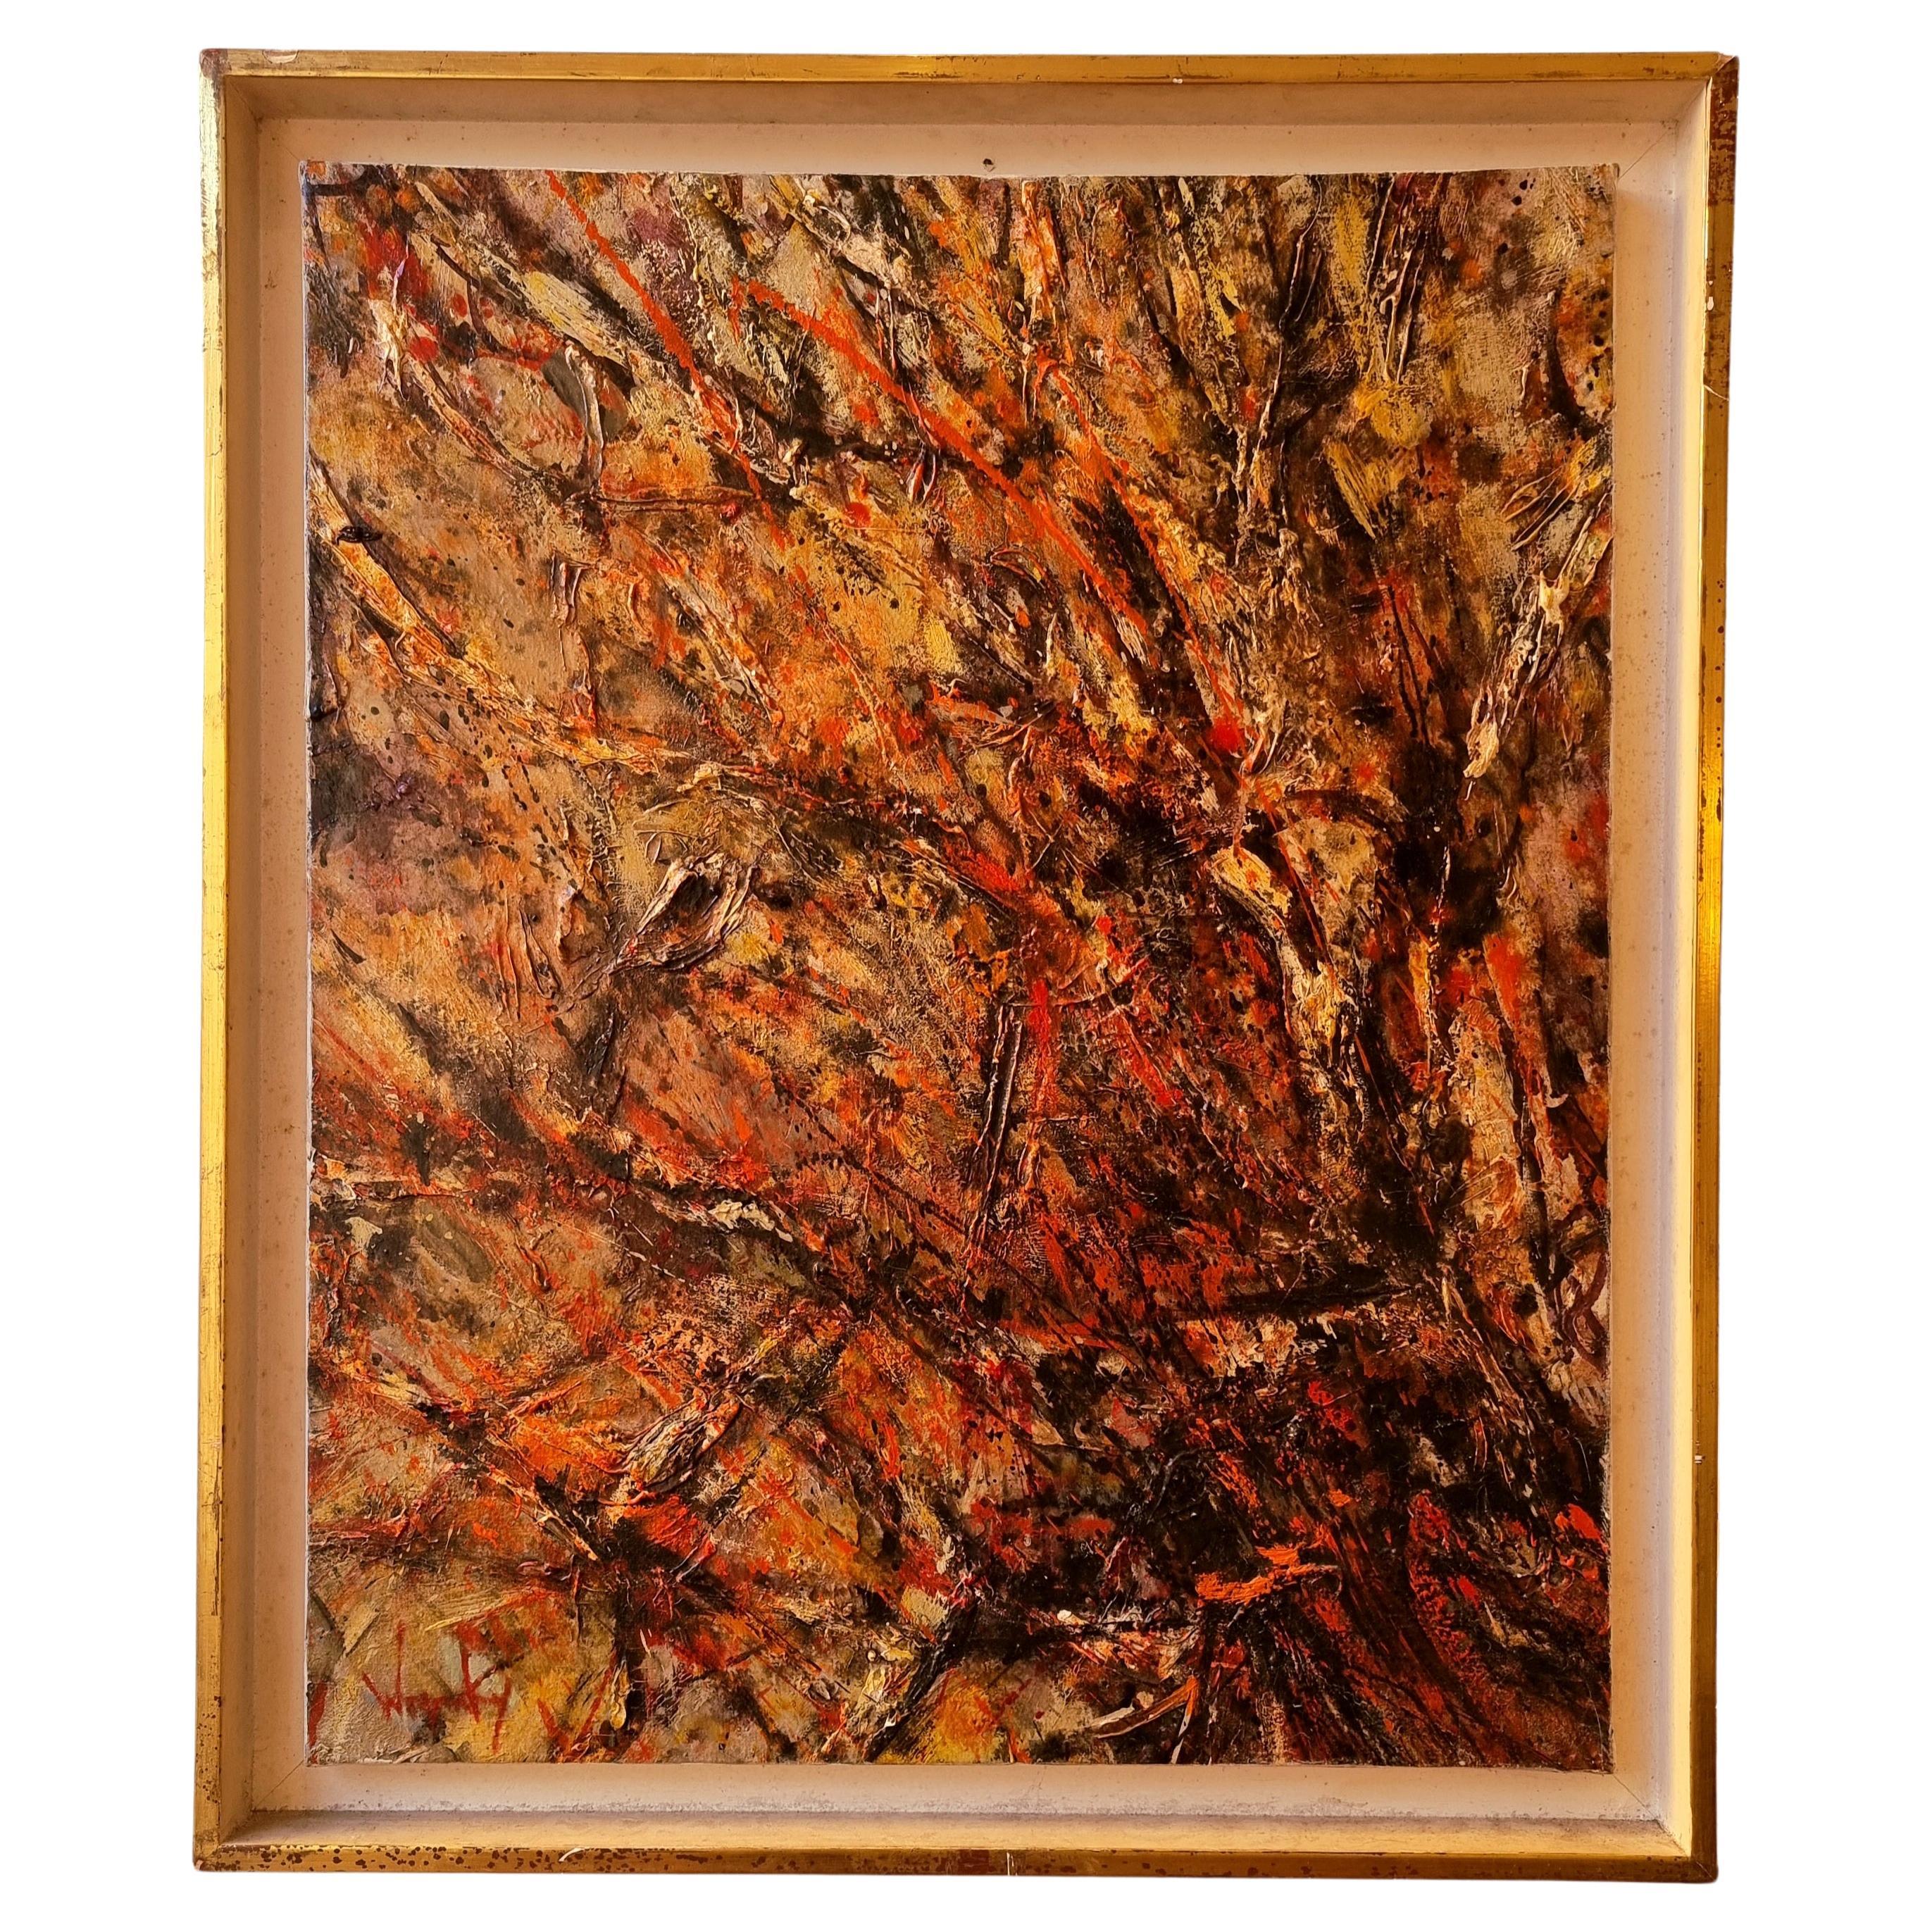 Peinture abstraite Tree of Fire de Robert Wogensky, huile sur toile, vers 1960